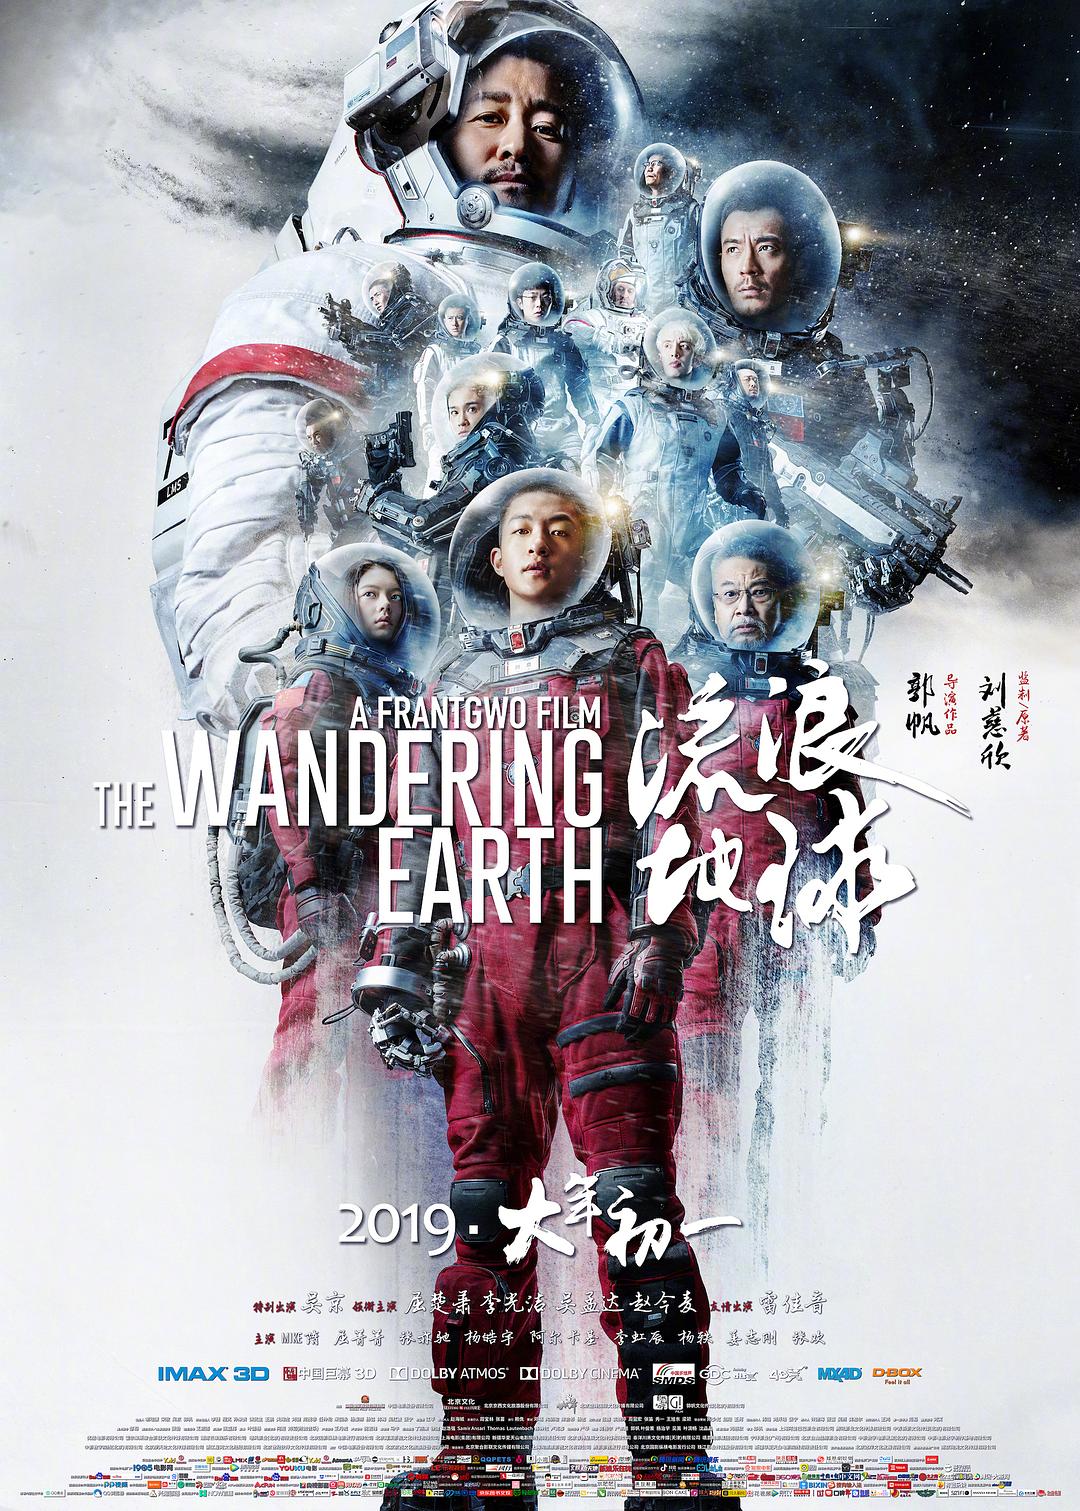 流浪地球 The.Wandering.Earth.2019.CHINESE.1080p.BluRay.REMUX.AVC.DTS-HD.MA.TrueHD.7.1.Atmos-FGT 37.44GB-1.png